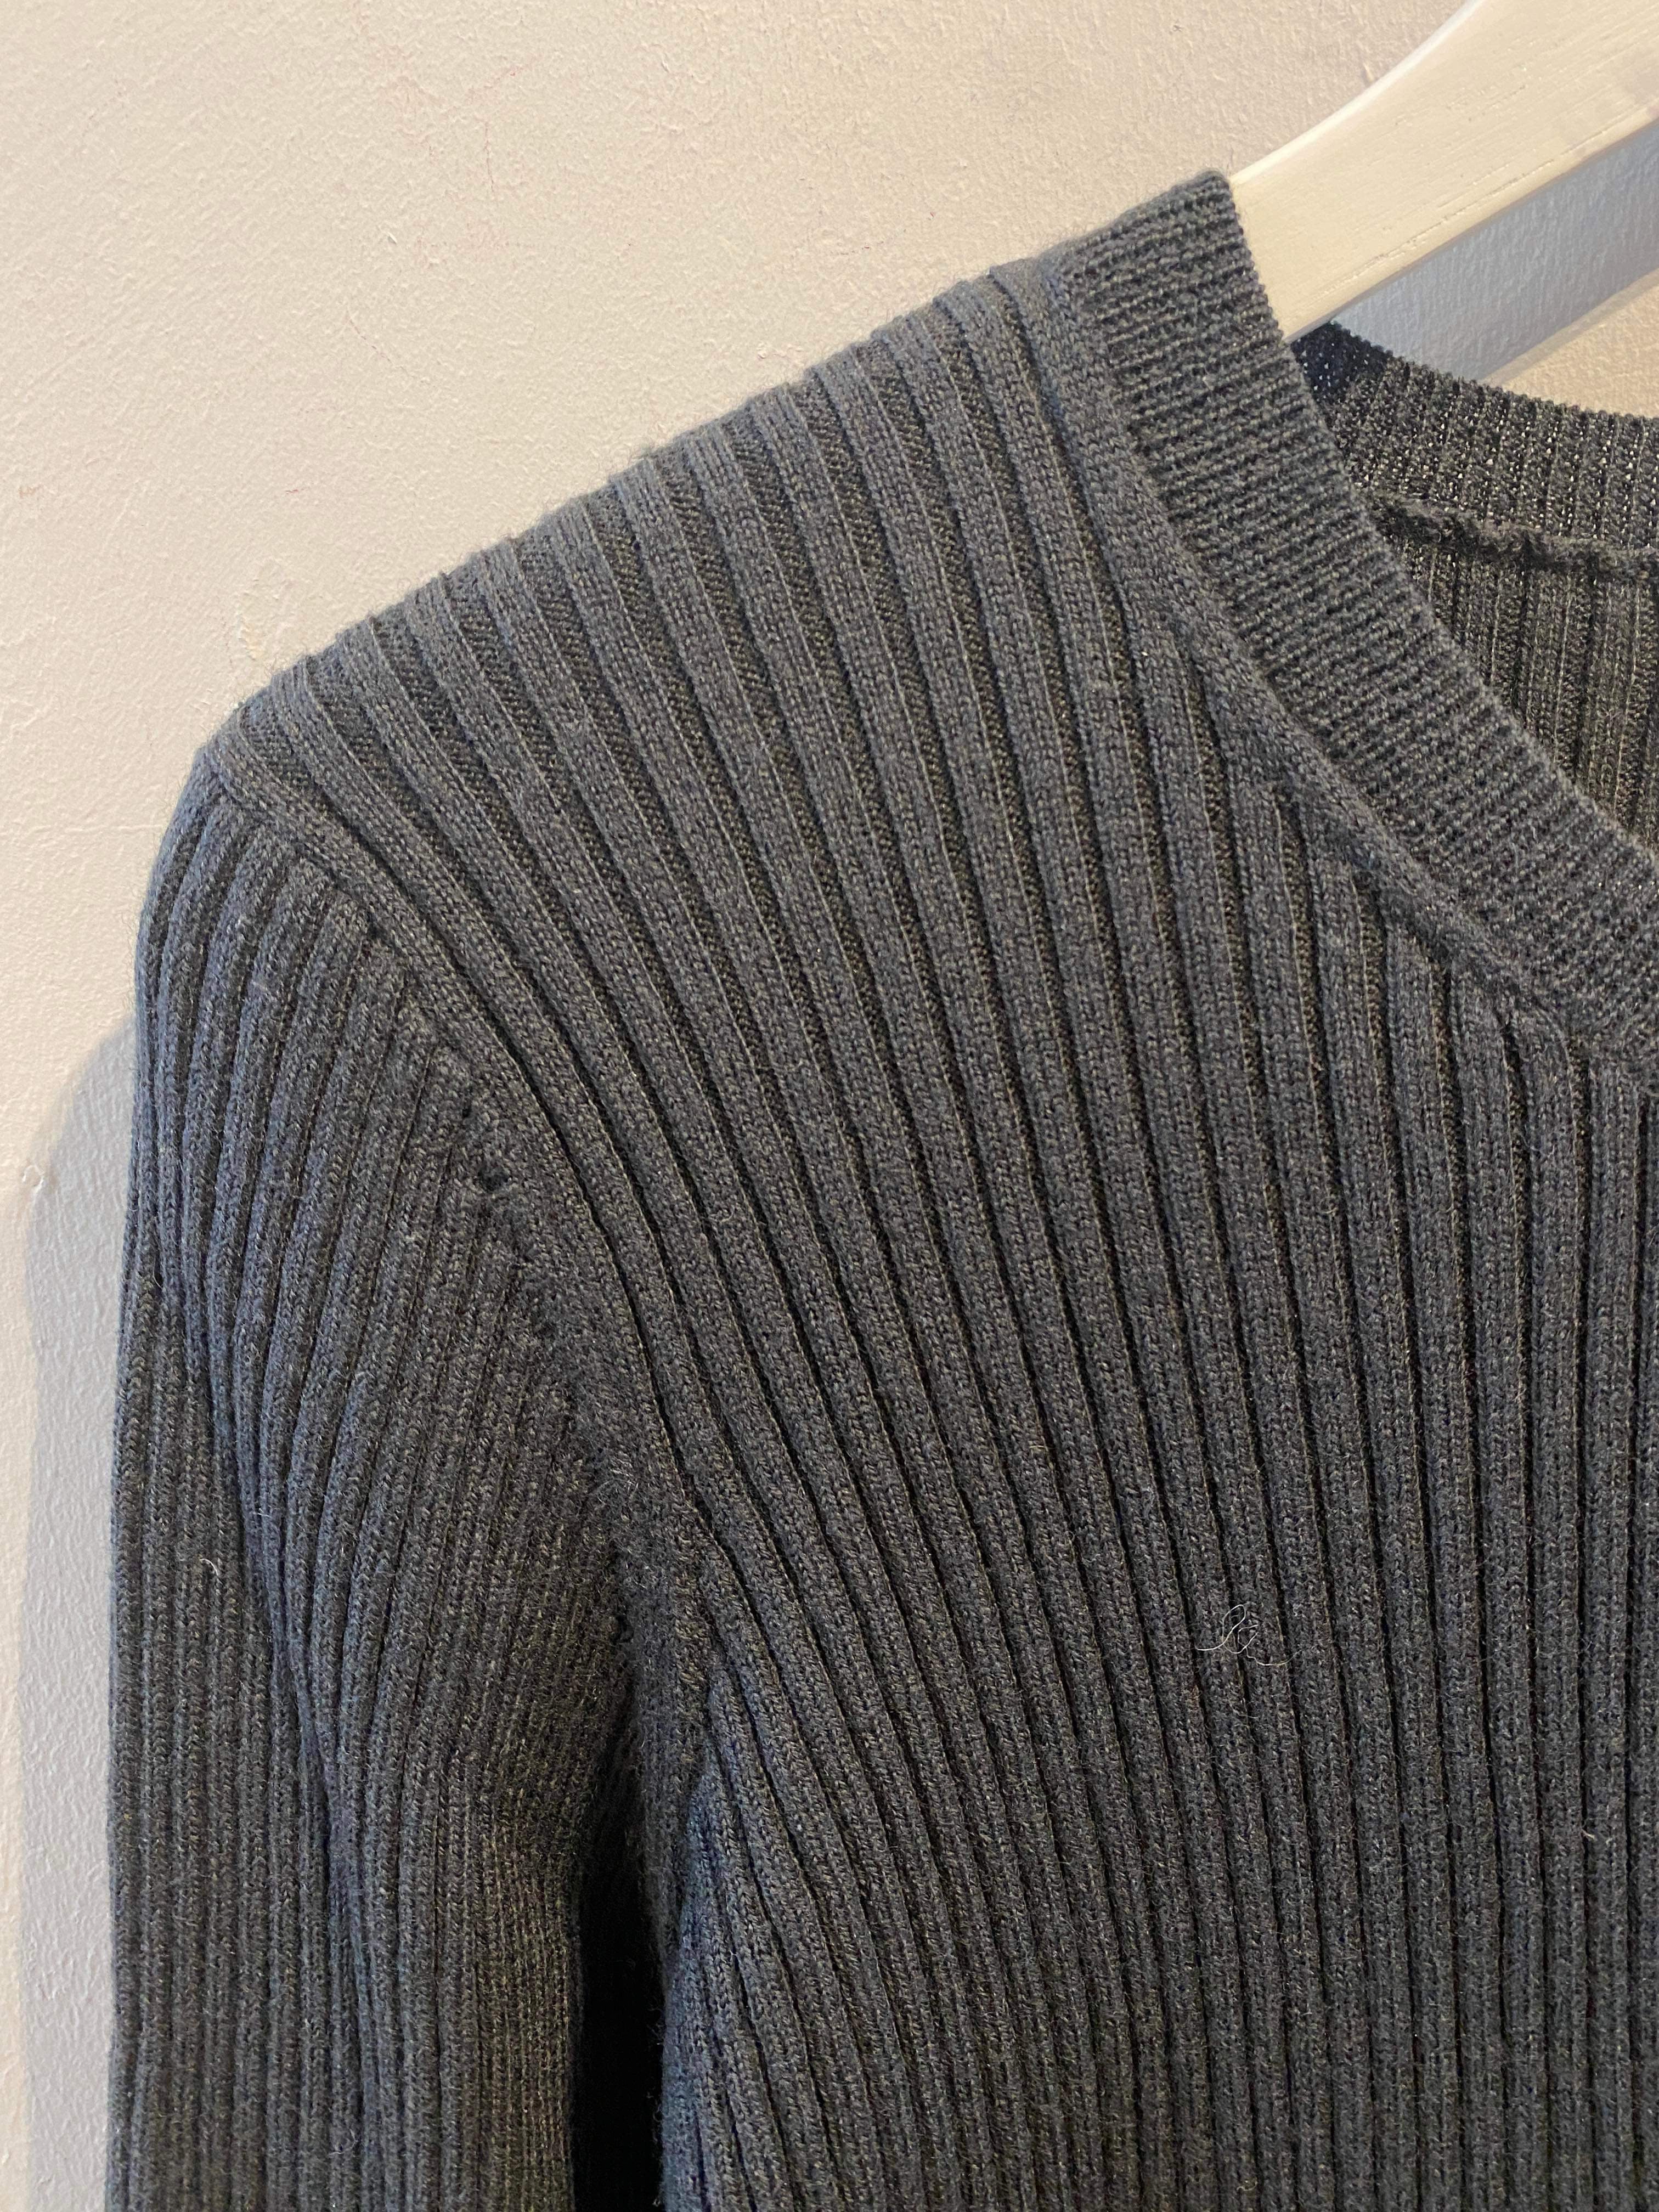 Iro Paris - Sweater - Size: L